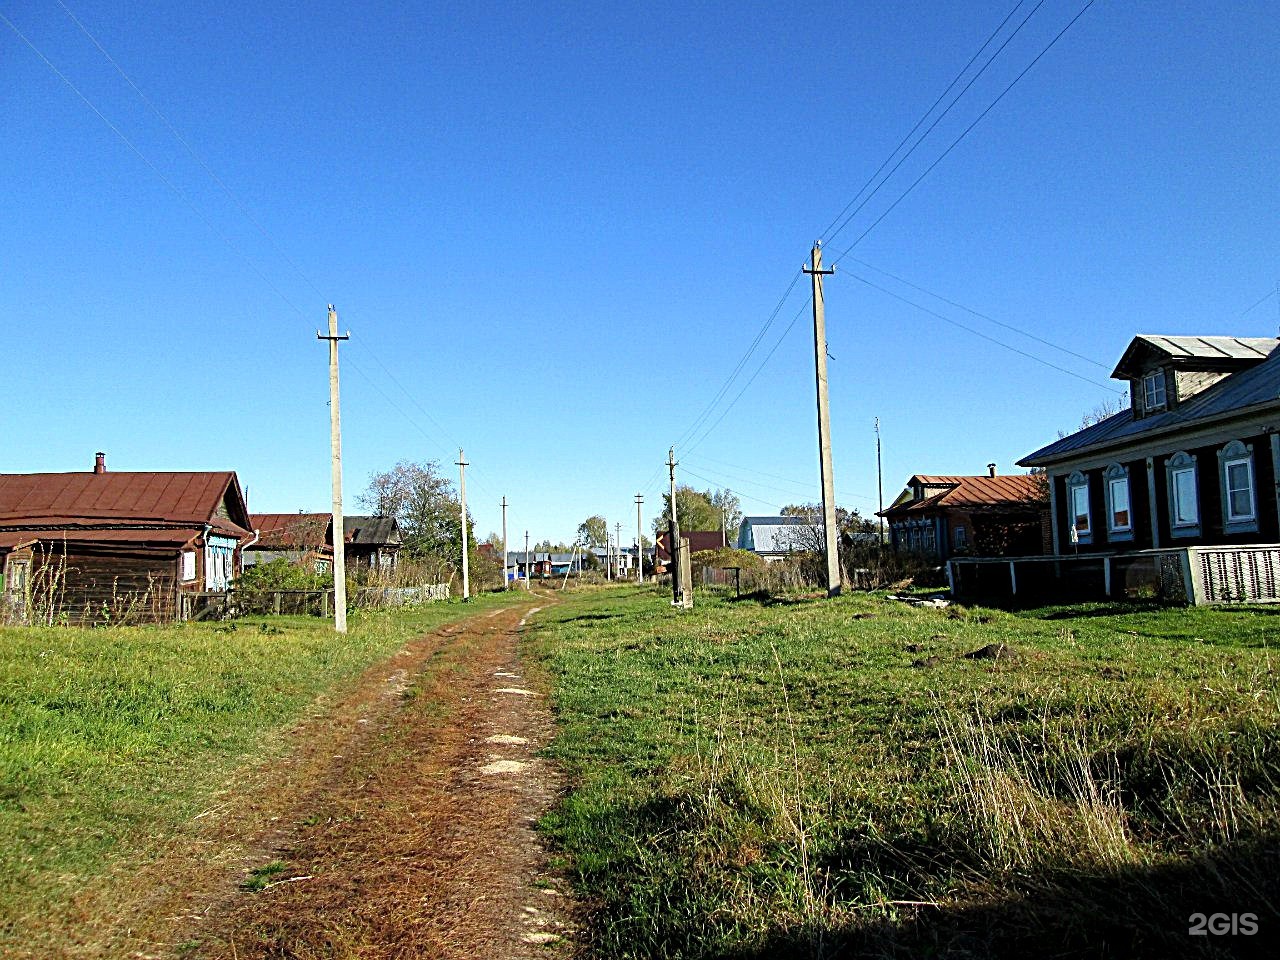 Поселок руде в нижегородской области